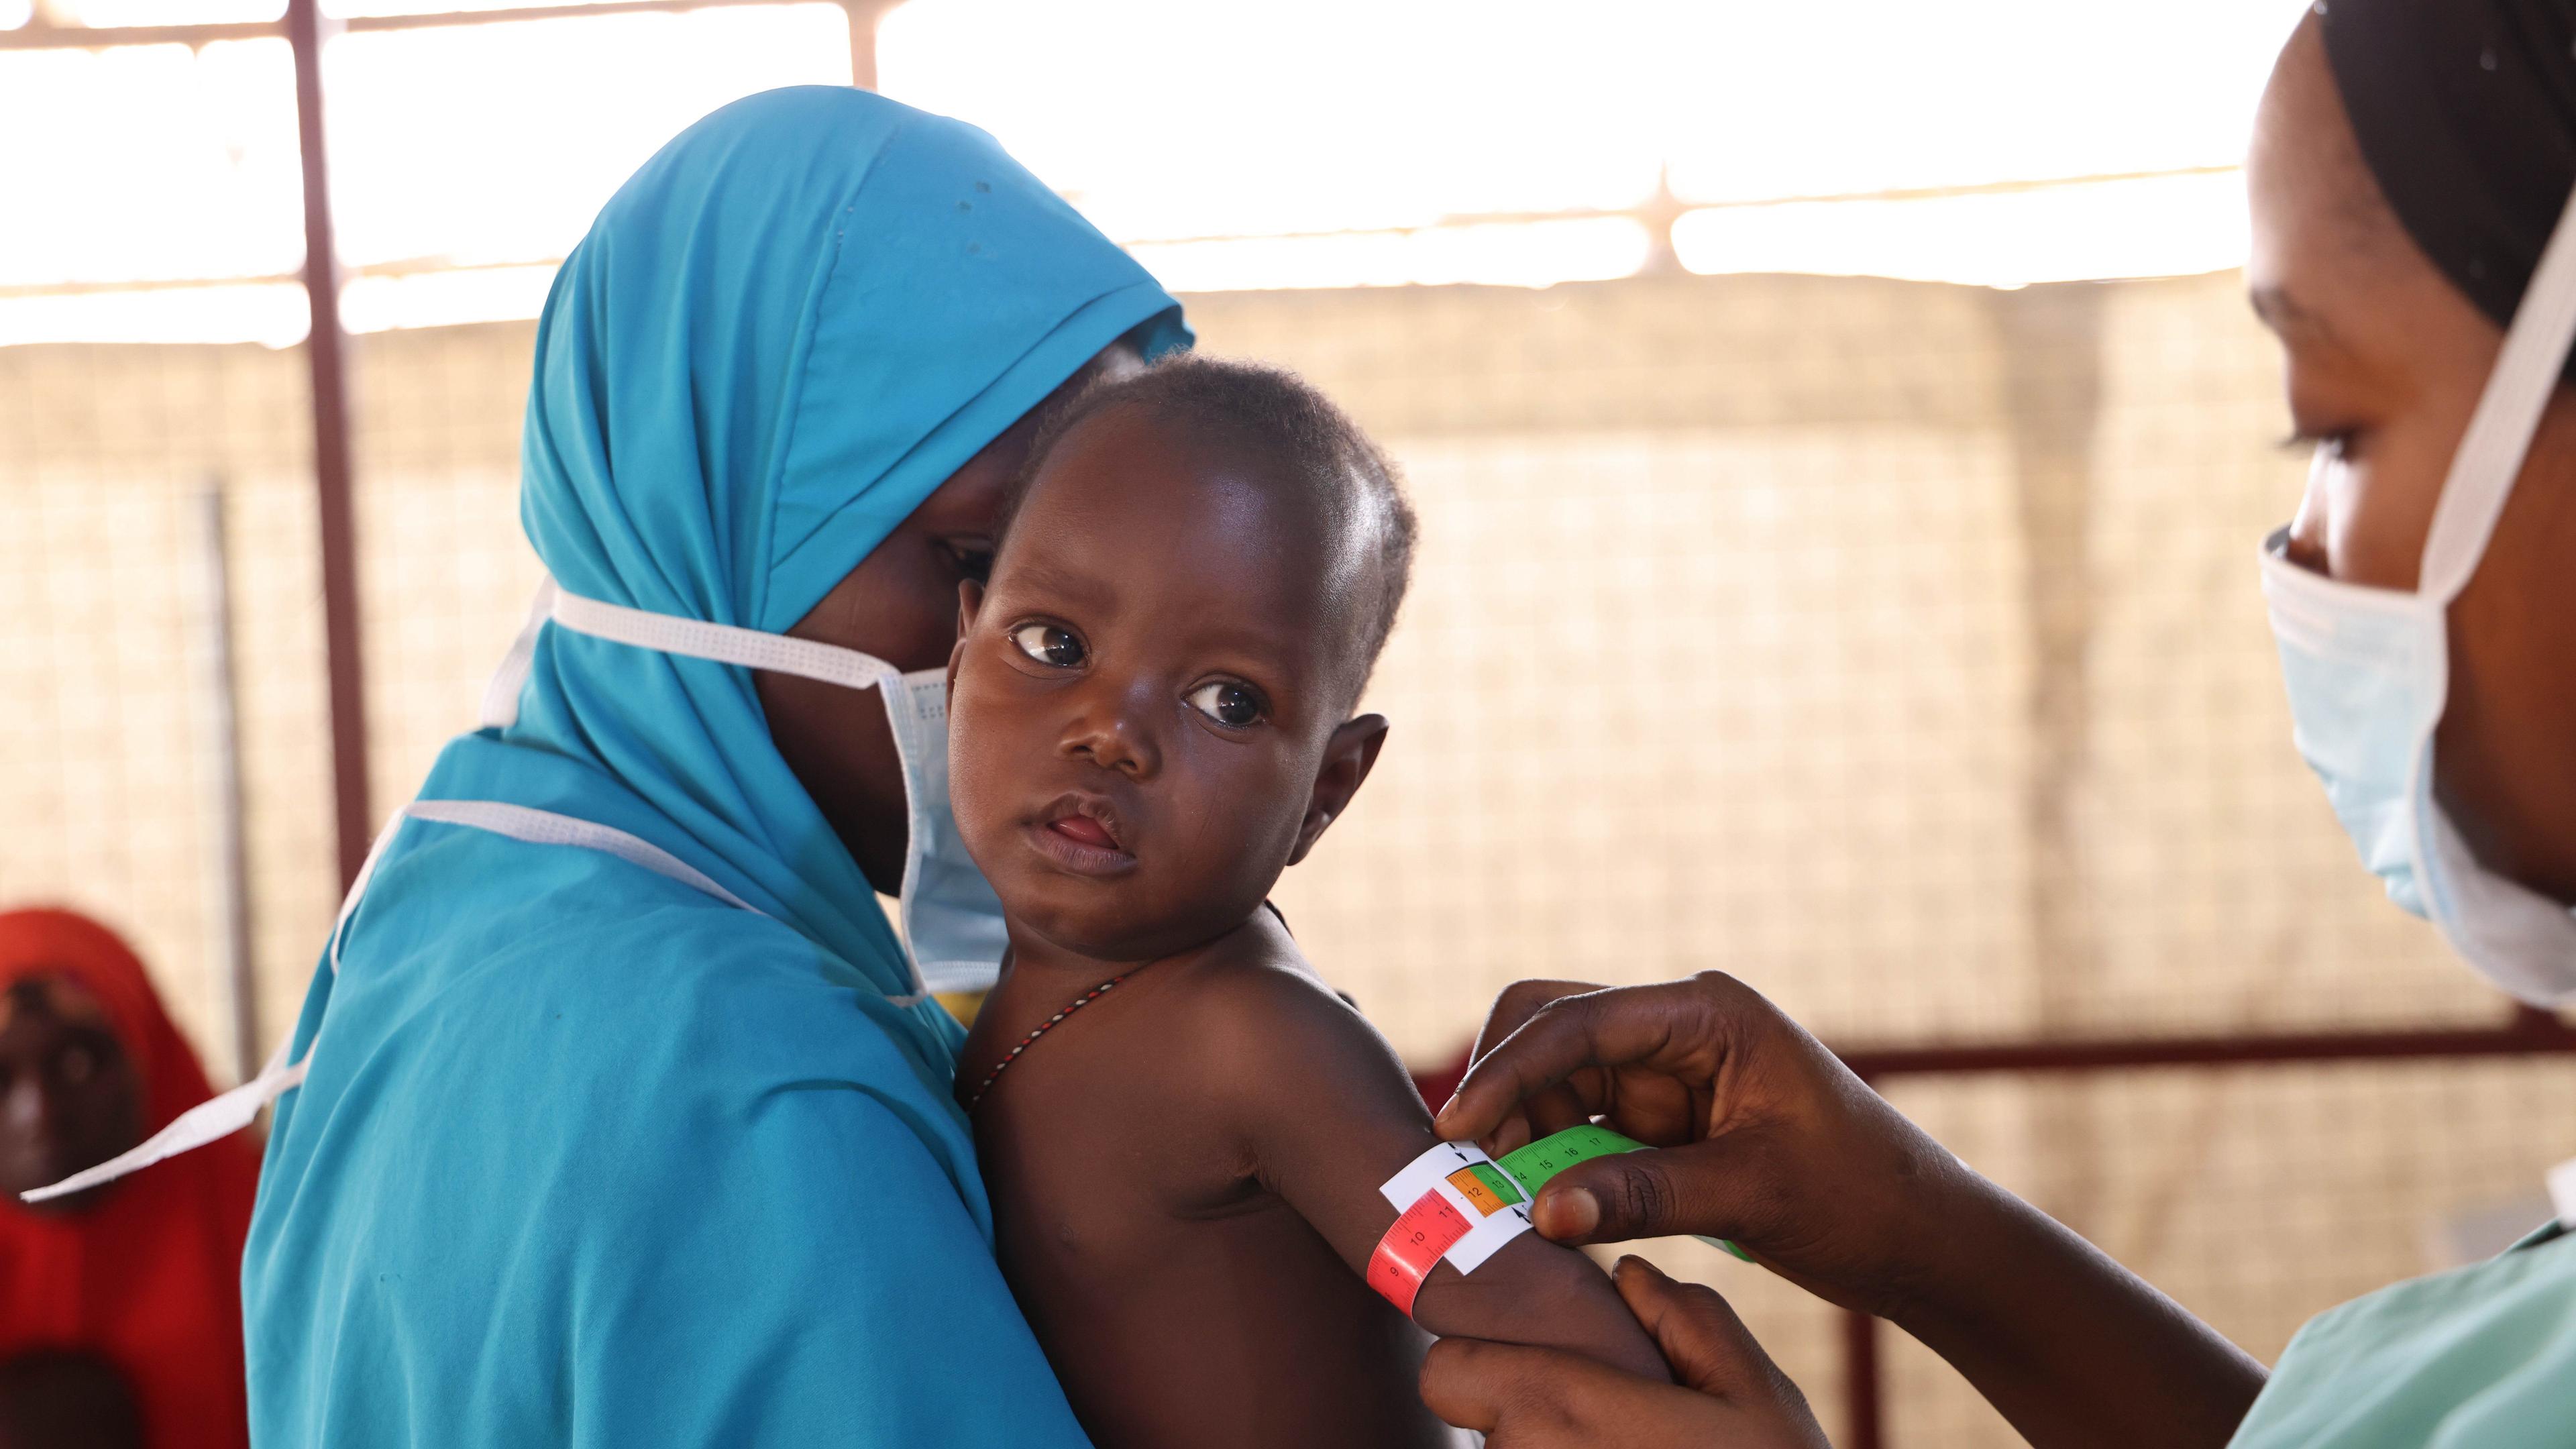 Increase in admissions for malnutrition in Maiduguri, Borno State. 